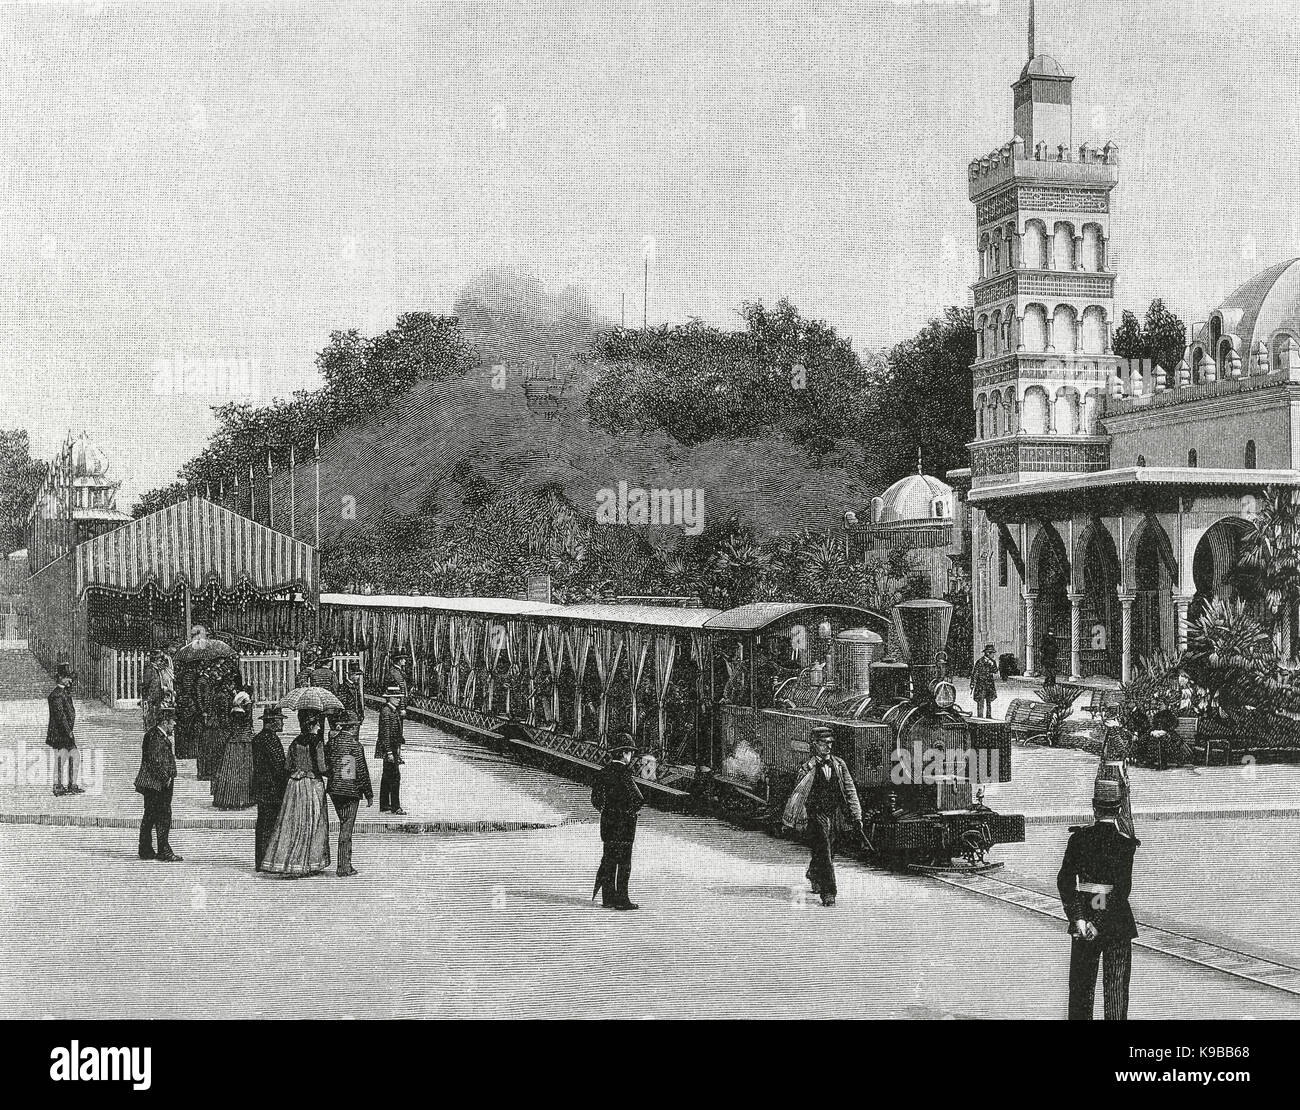 La Francia. Parigi. Esposizione Universale del 1889. Ferrovia Decauville treno alla stazione di partenza. Esplanade des Invalides. Incisione, 1889. Foto Stock